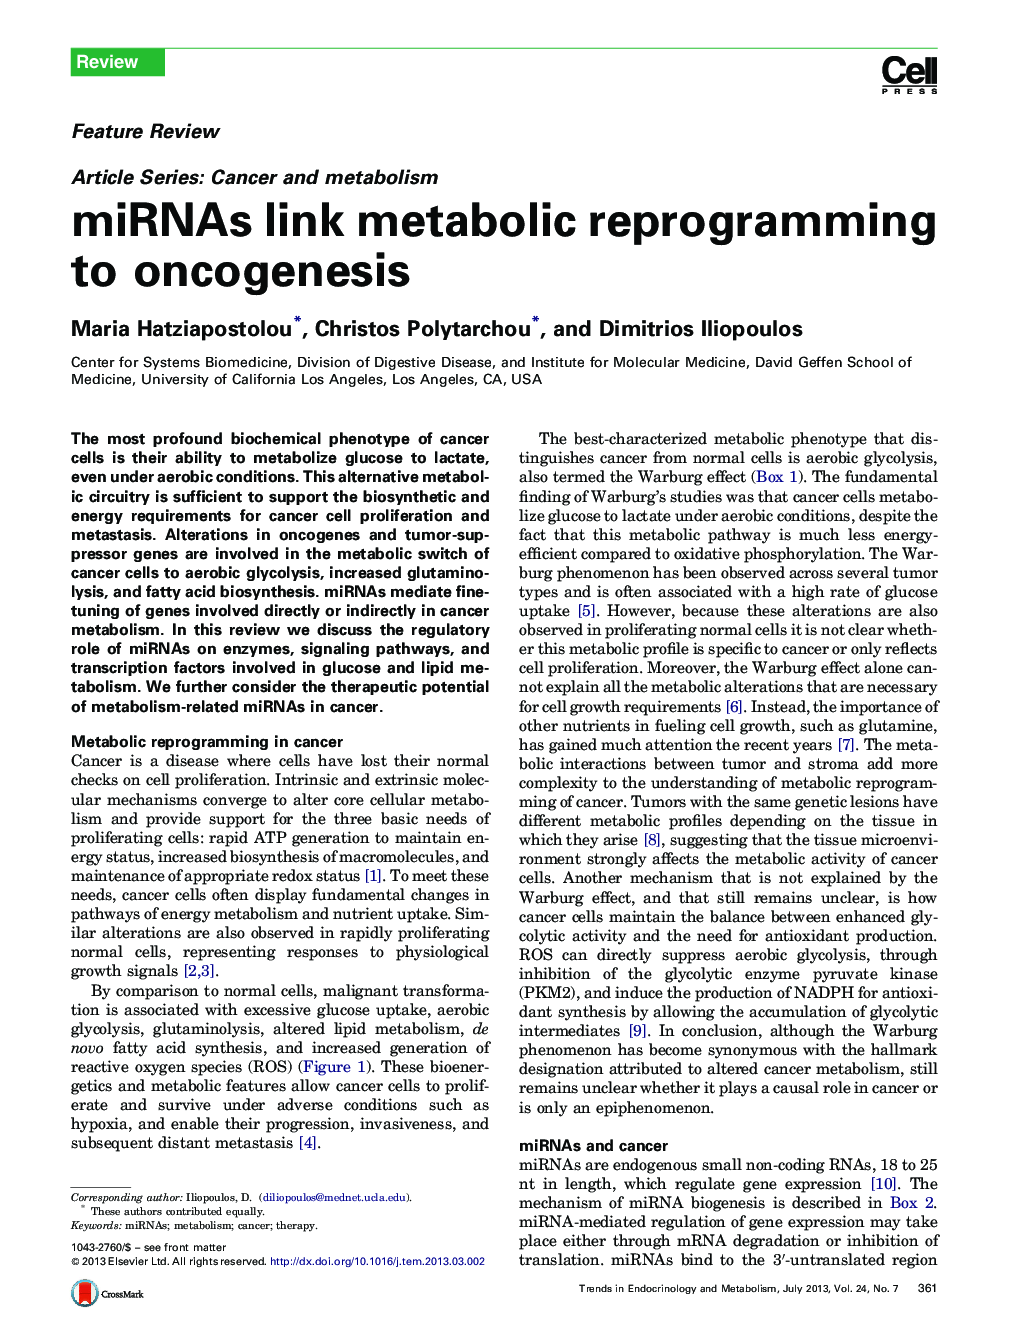 miRNAs link metabolic reprogramming to oncogenesis